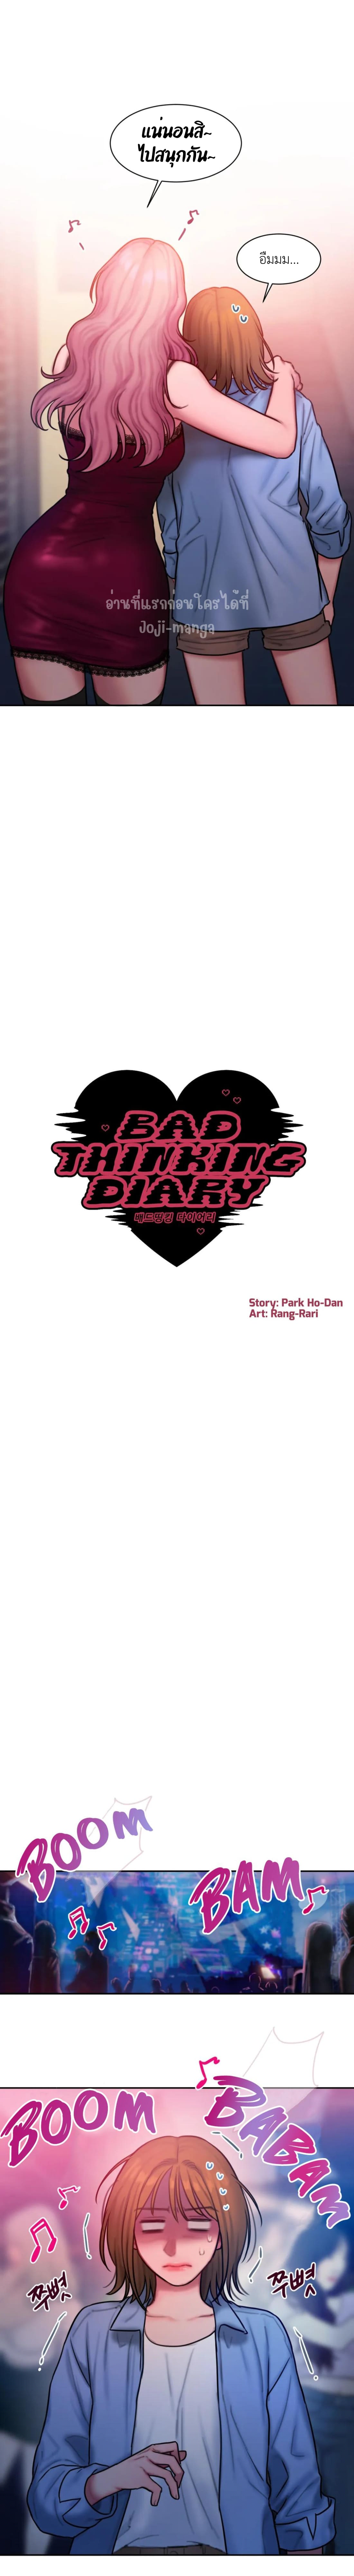 Bad Thinking Diary 26 04